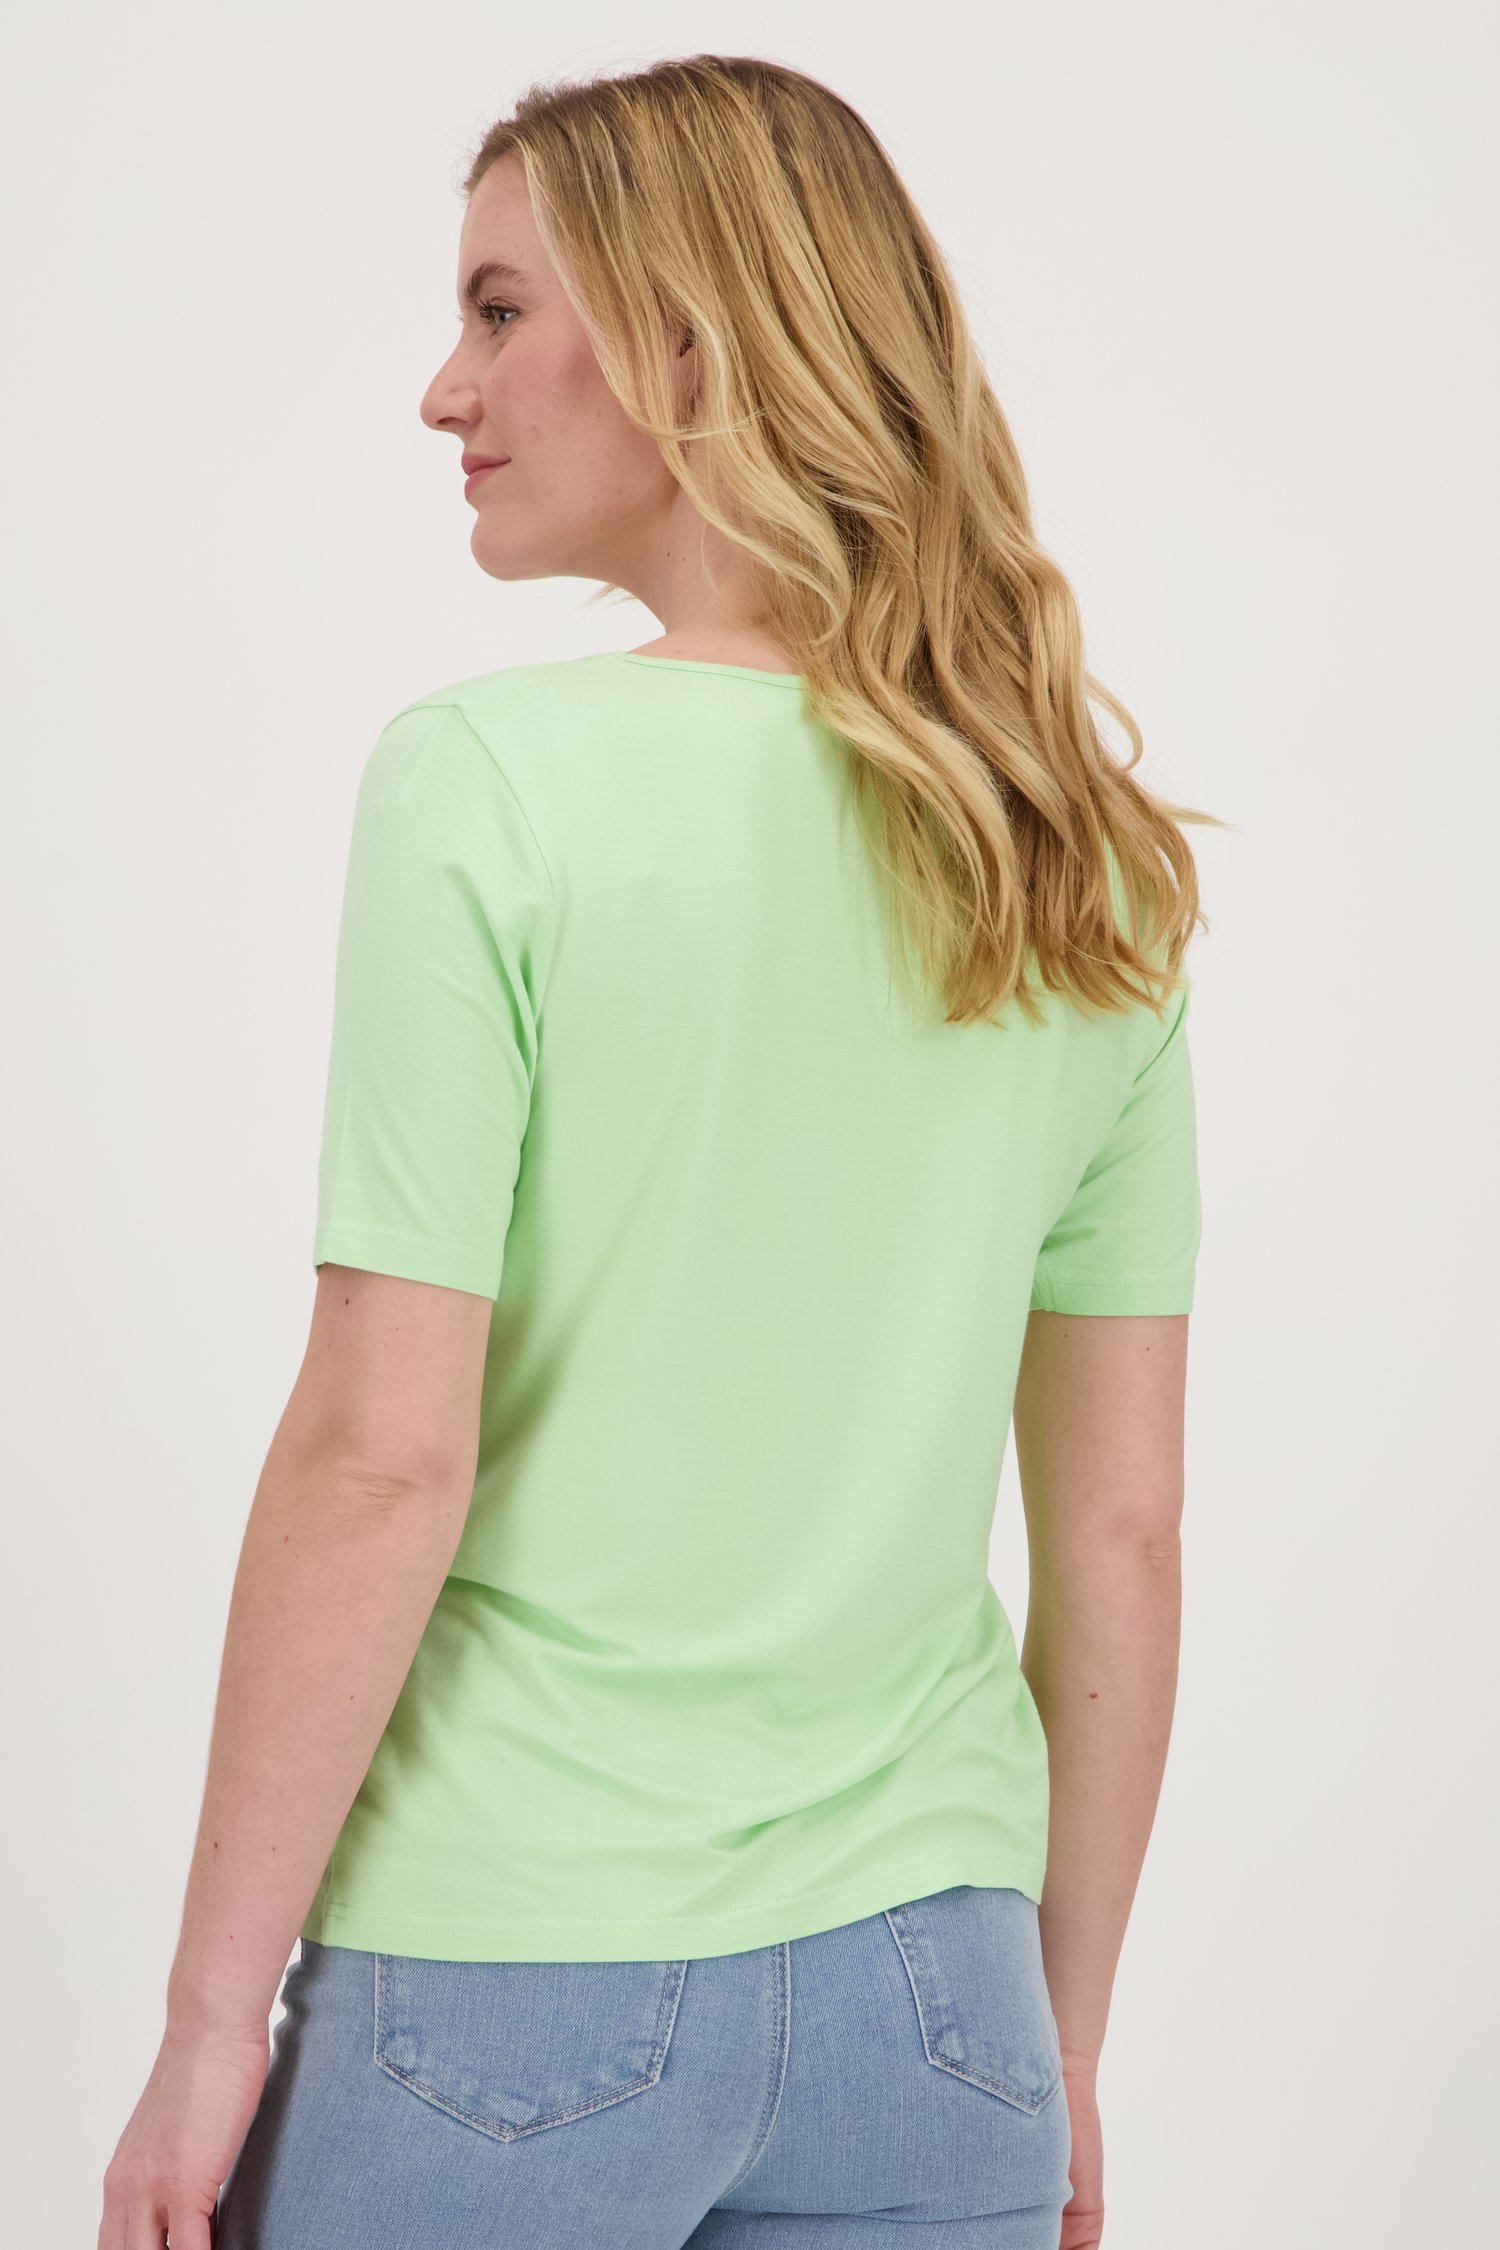 T-shirt à manches courtes vert clair de Liberty Island pour Femmes